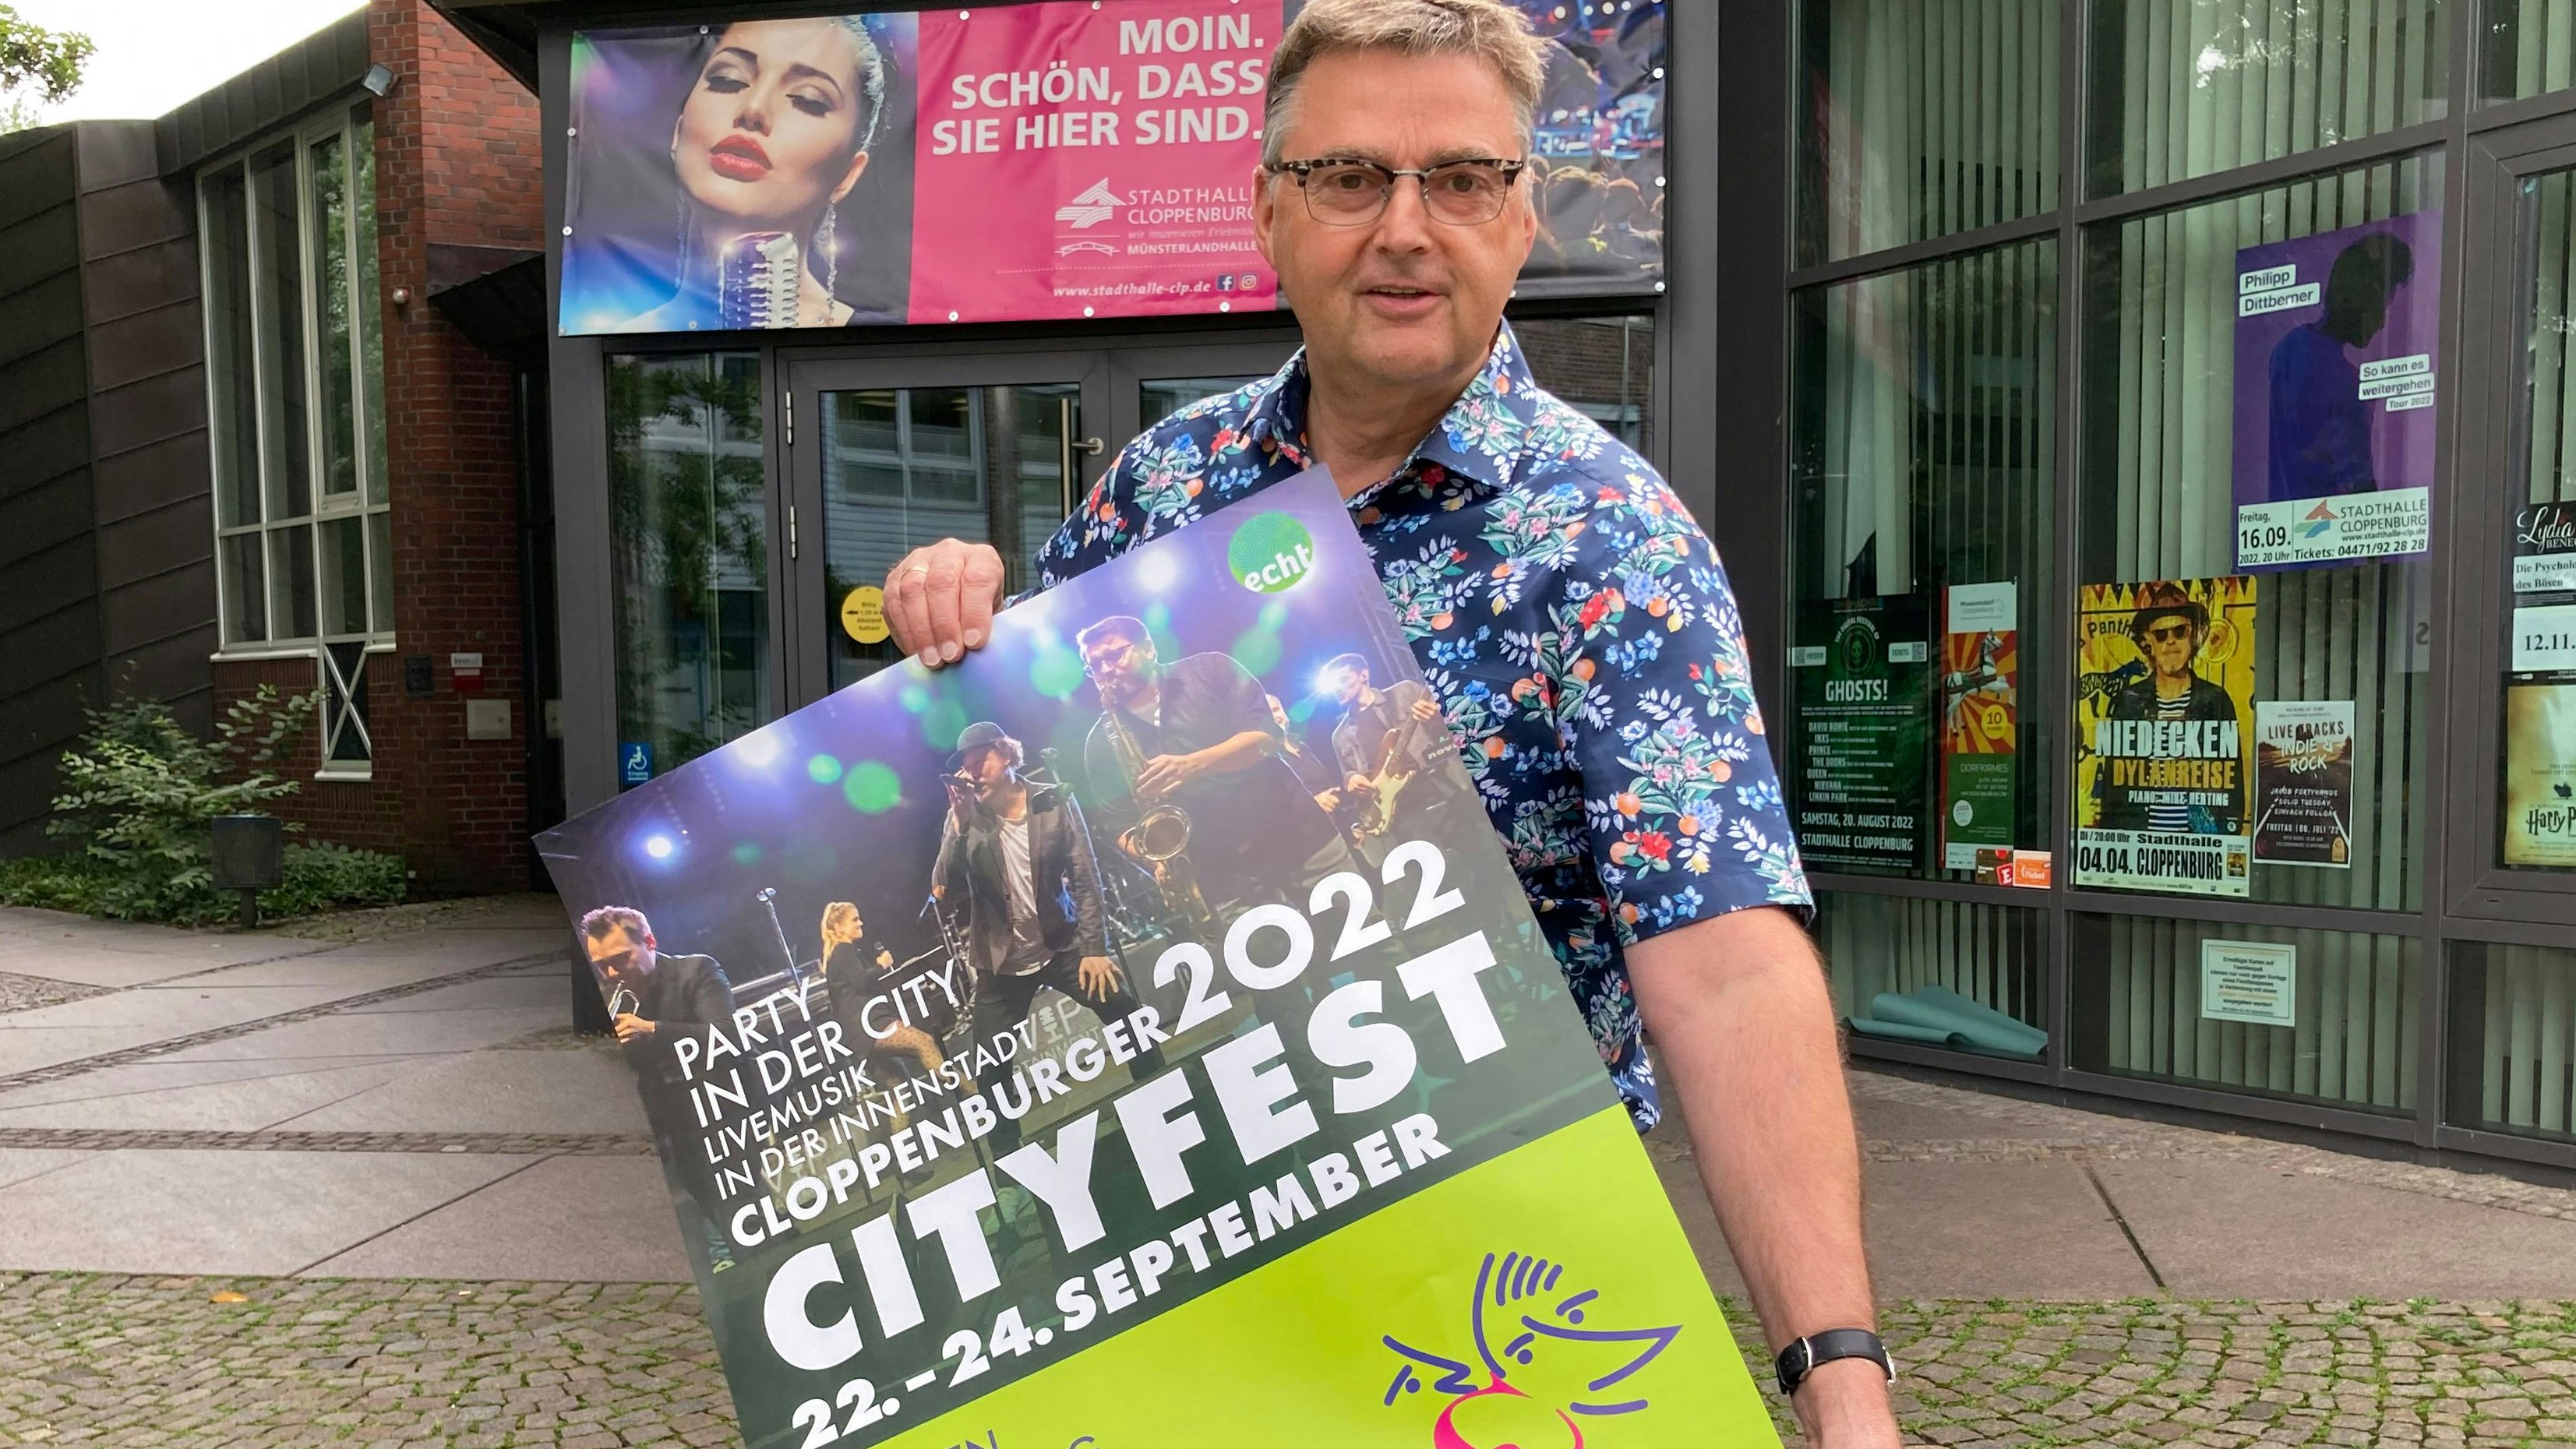 Freut sich auf das Cityfest: Stadthallen-Geschäftsführer Alfons Lücking. Foto: Hermes